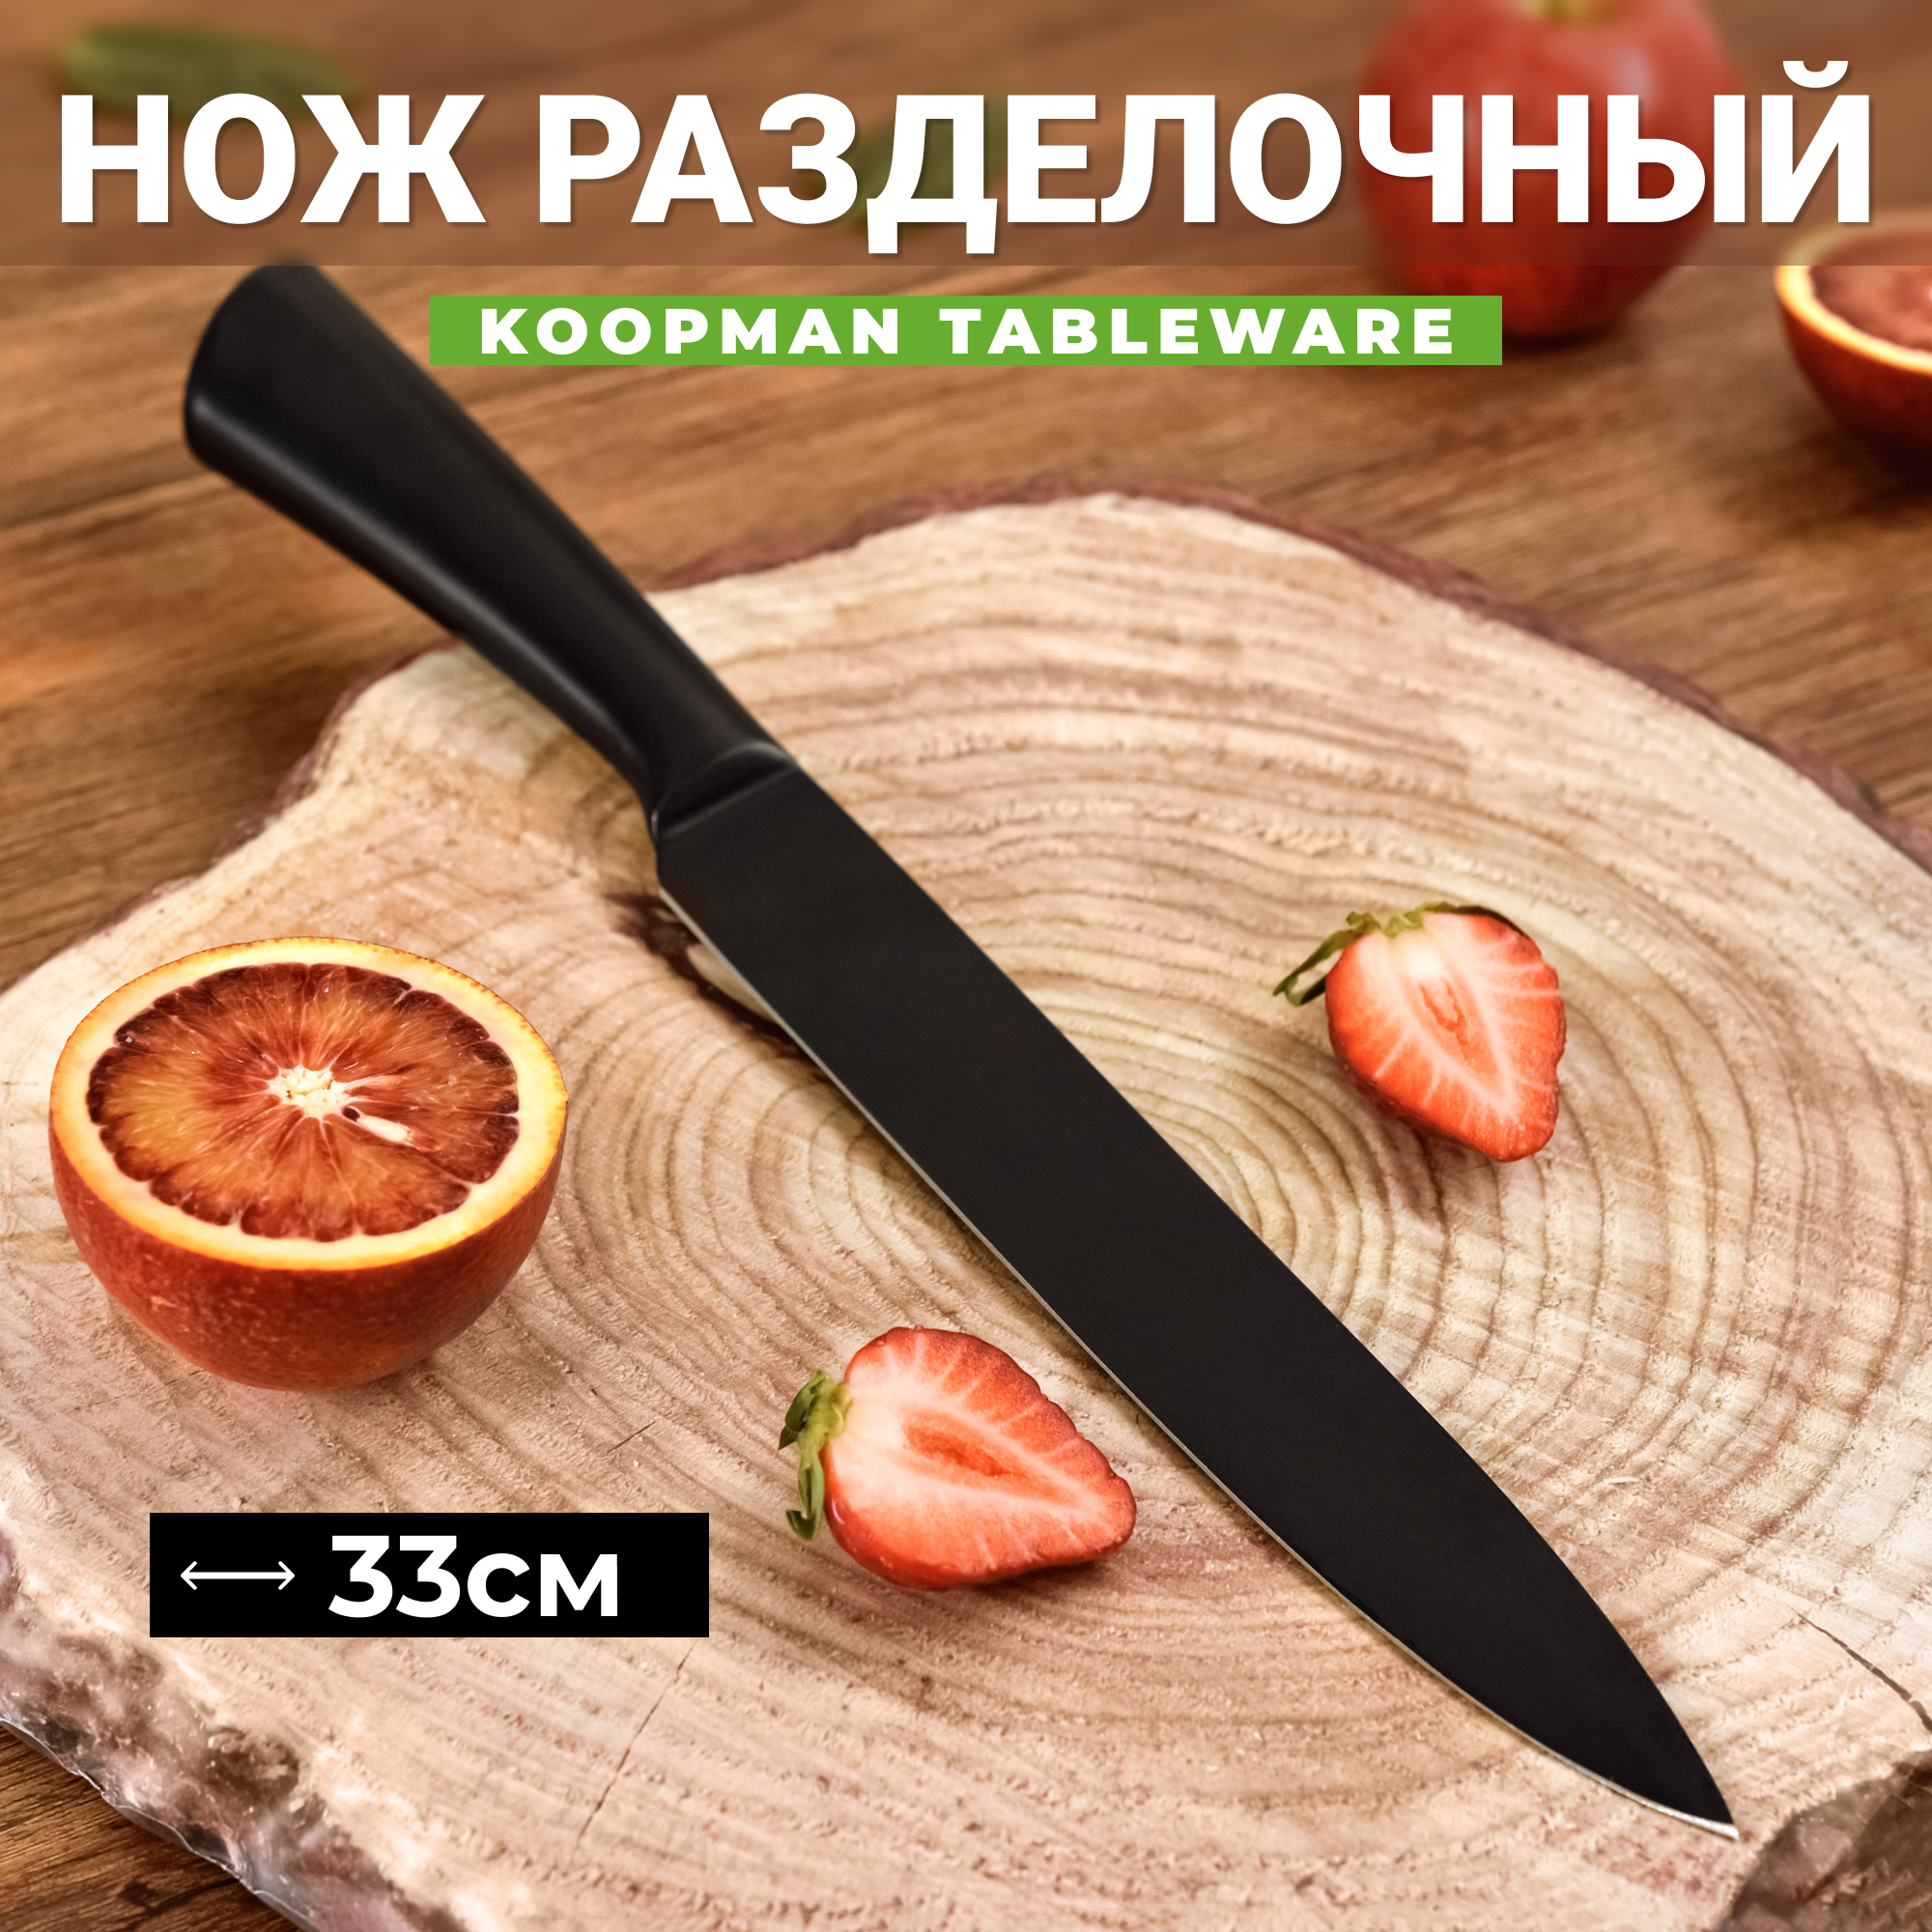 Нож разделочный Koopman tableware 33 см, цвет чёрный - фото 2